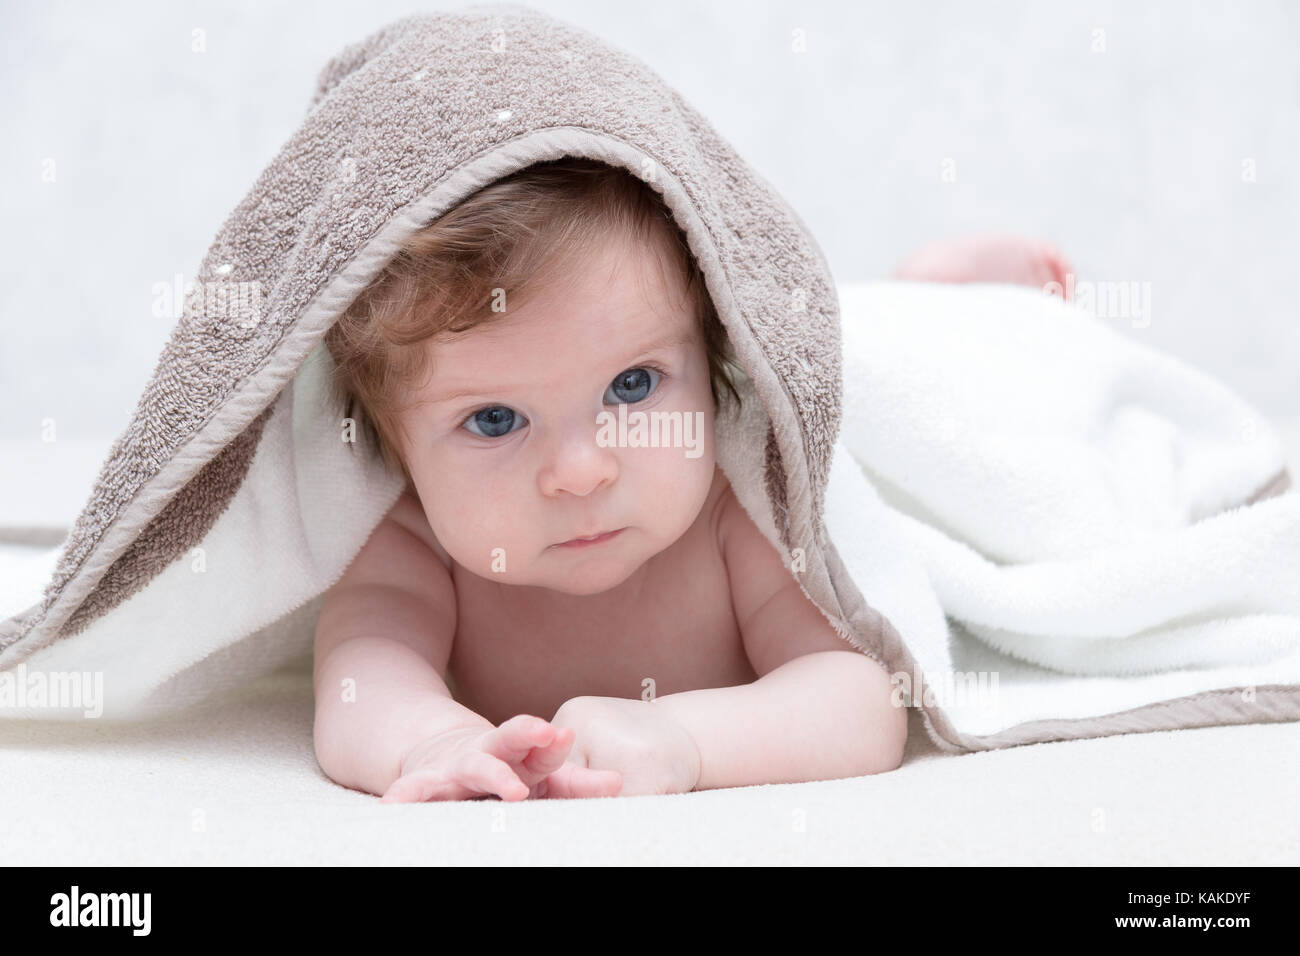 Carino neonato ragazza con bellissimi occhi azzurri su una spugna bianca  coverlet. adorabile baby guardando fuori sotto una coltre bianca o  asciugamano. triste bambina in asciugamano bianco dopo la doccia Foto stock  -